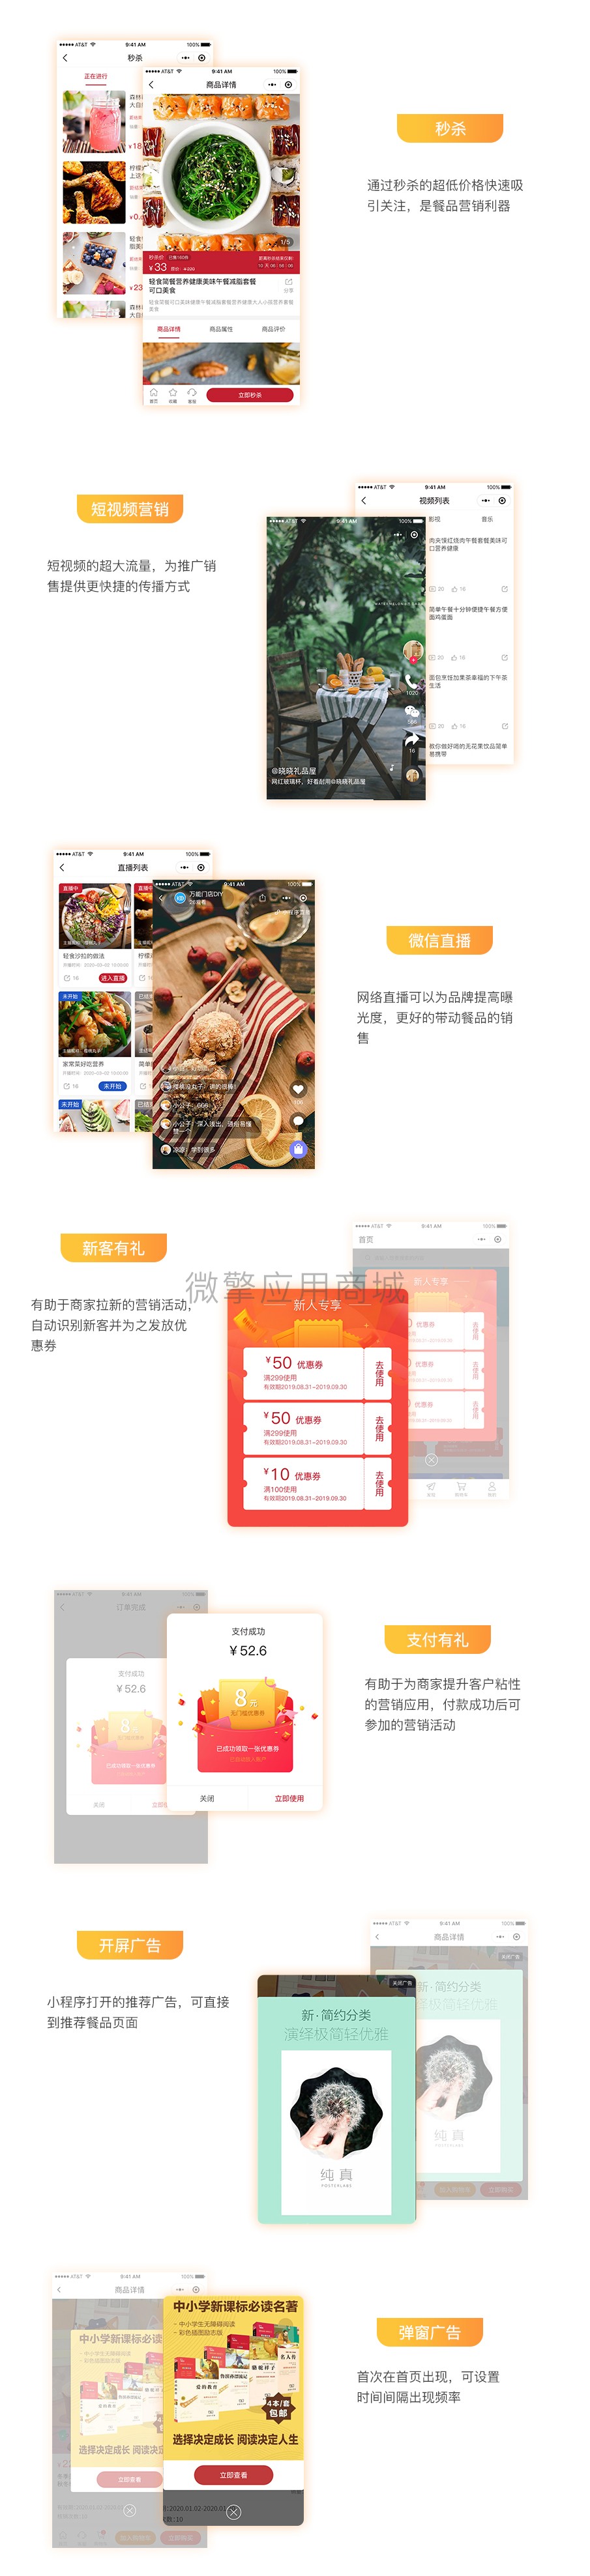 壹佰智慧餐厅V1.0.9 小程序前端线传（包更新）插图(6)